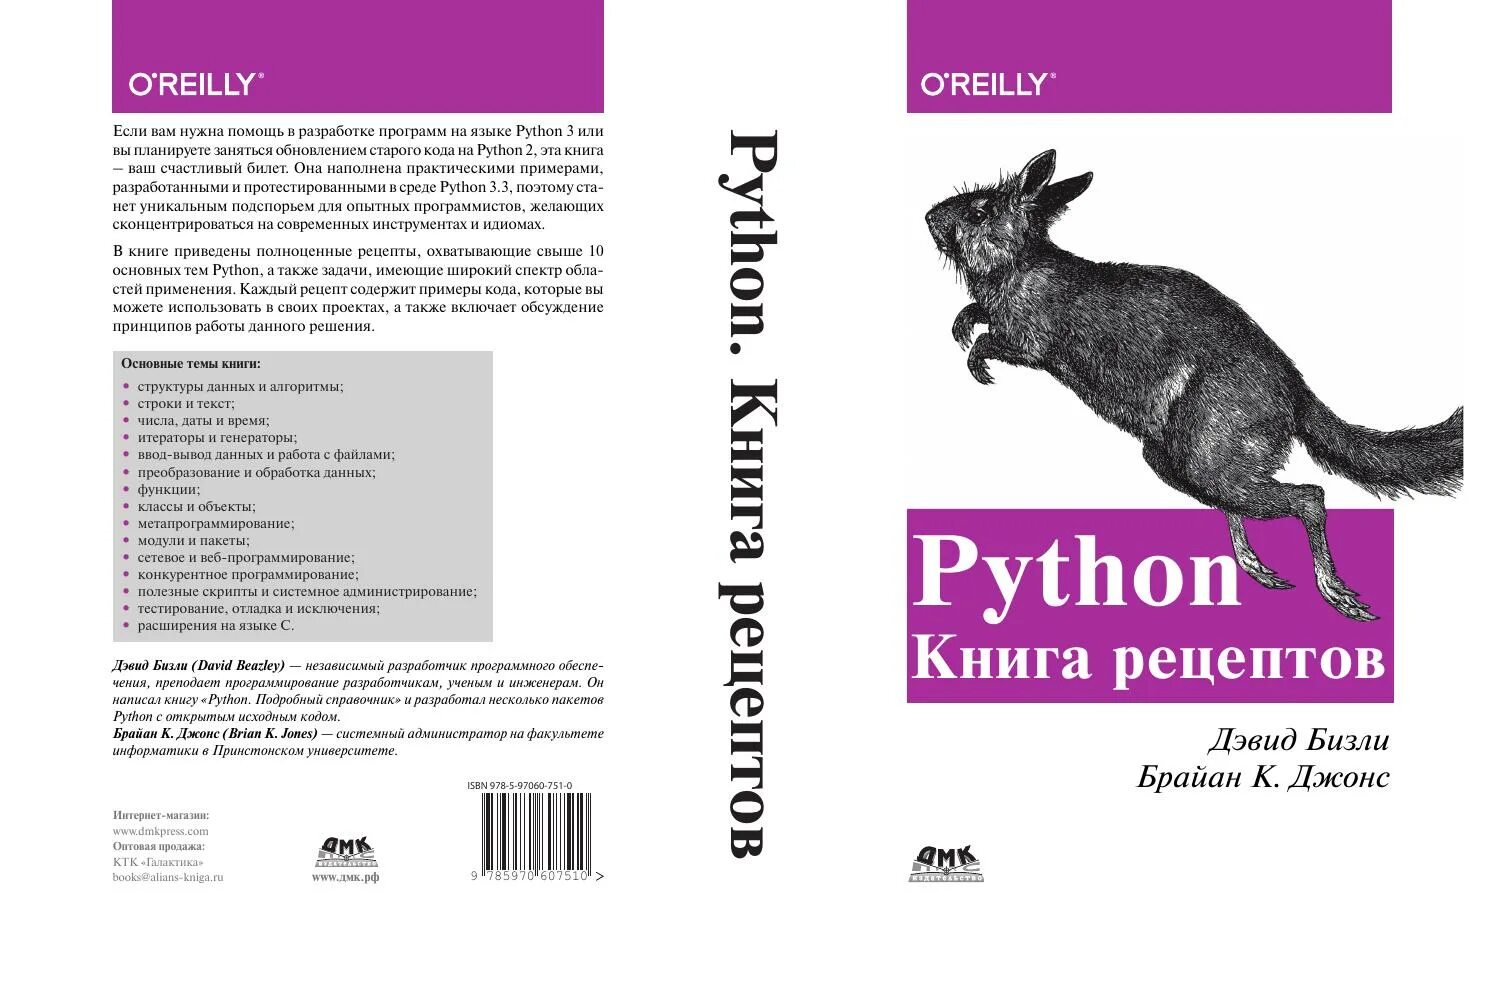 Задачи python книга. Python книга. Программирование на Python книга. Дэвид Бизли книги. Бизли д. "Python".